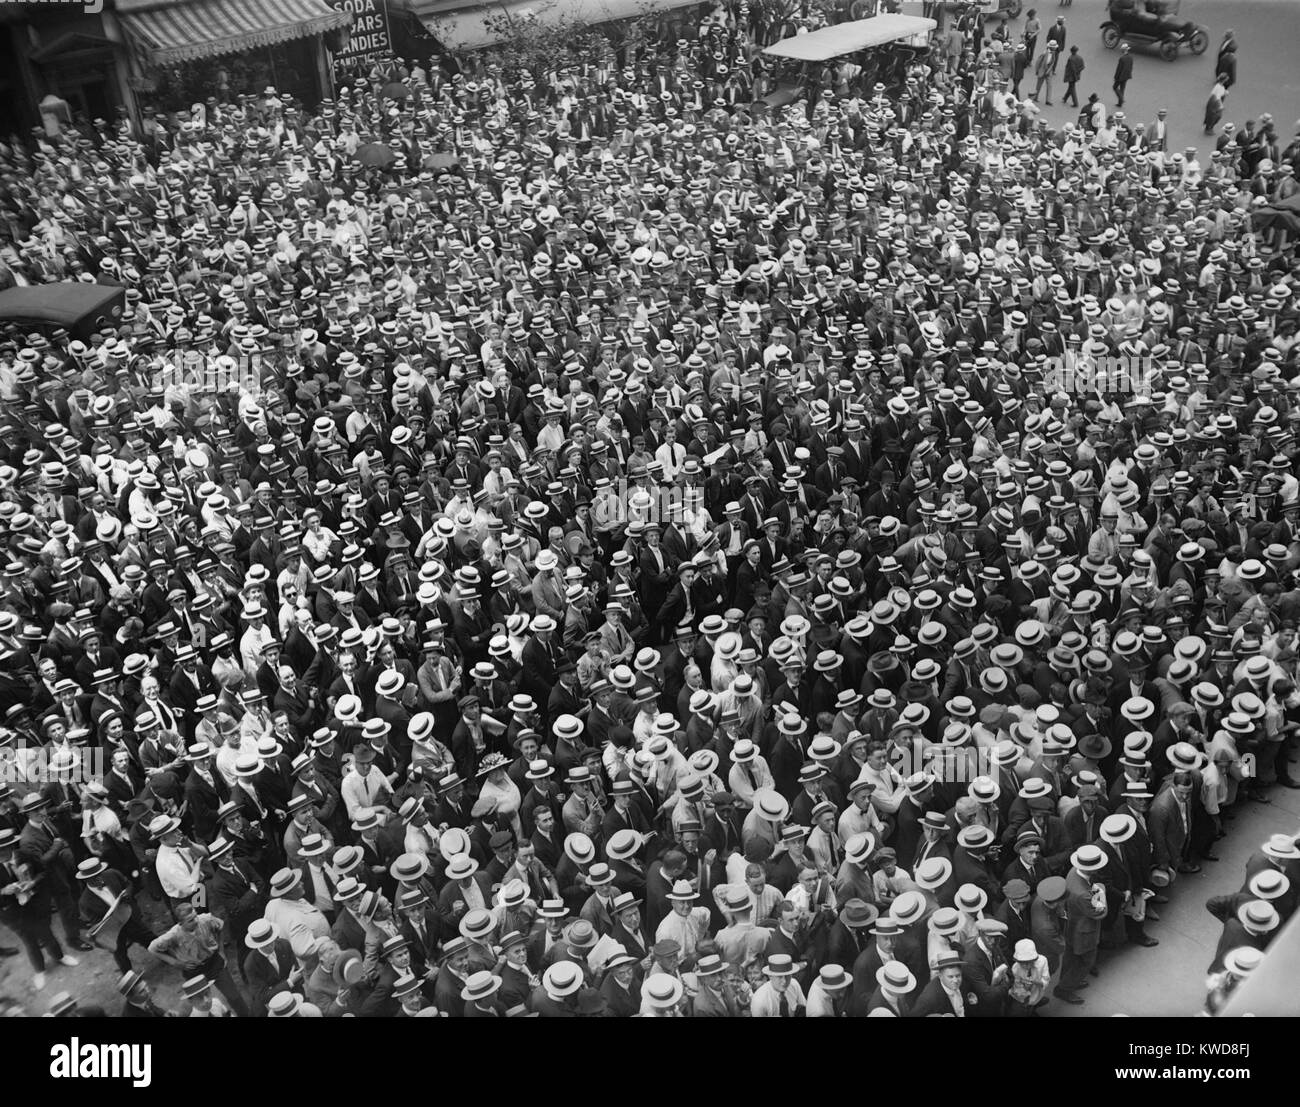 La foule à Dempsey-Georges Jack Carpentier lutte. Jersey City, 2 juillet 1921. C'était la première émission de radio en direct d'un titre. (BSLOC   2015 17 62) Banque D'Images